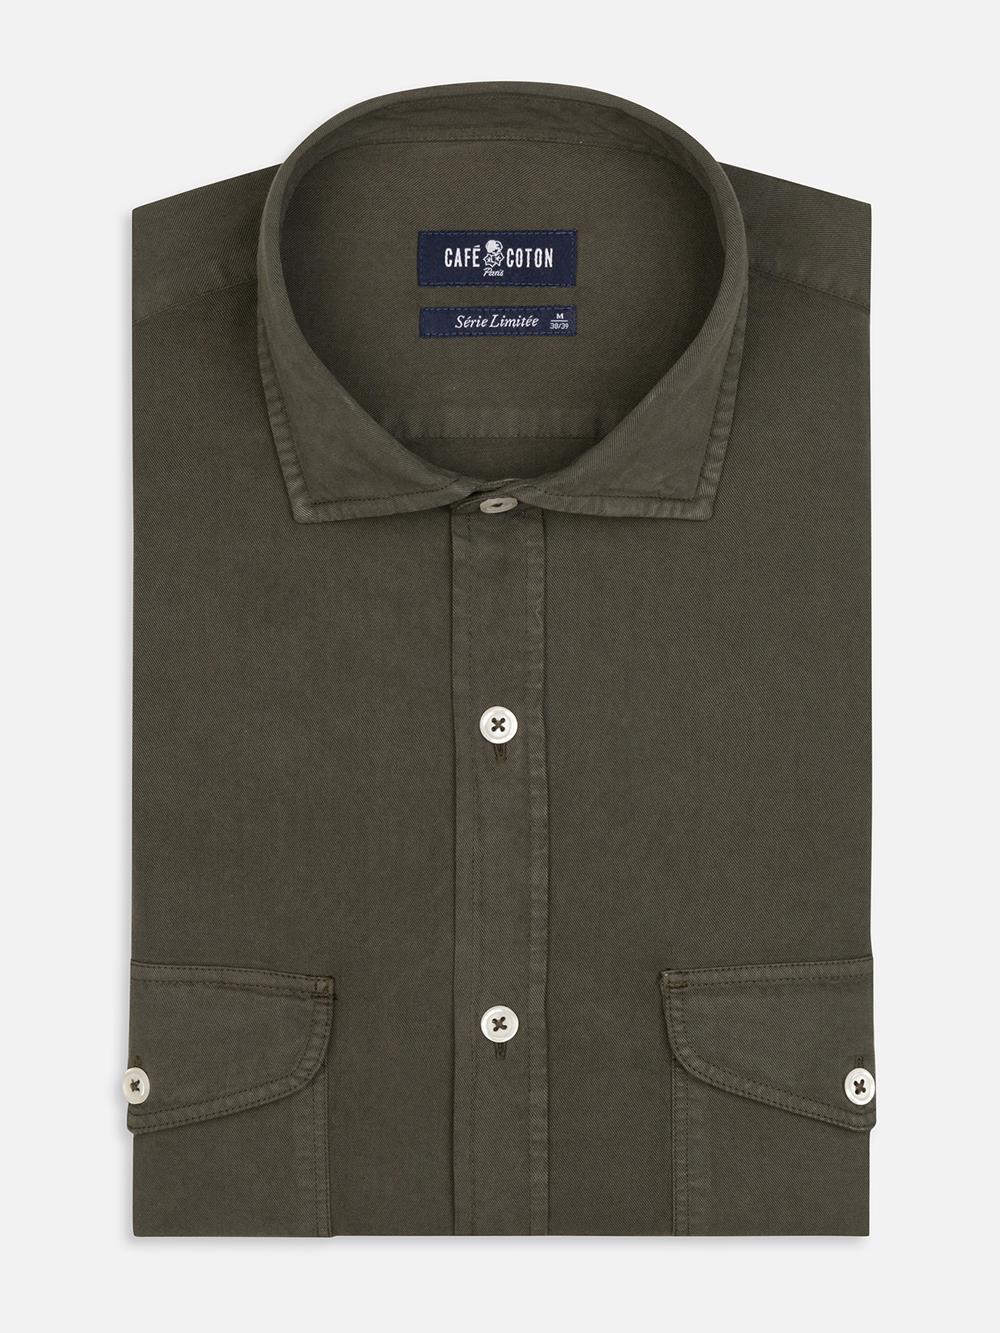 Scali shirt in khaki gabardine - Limited Edition